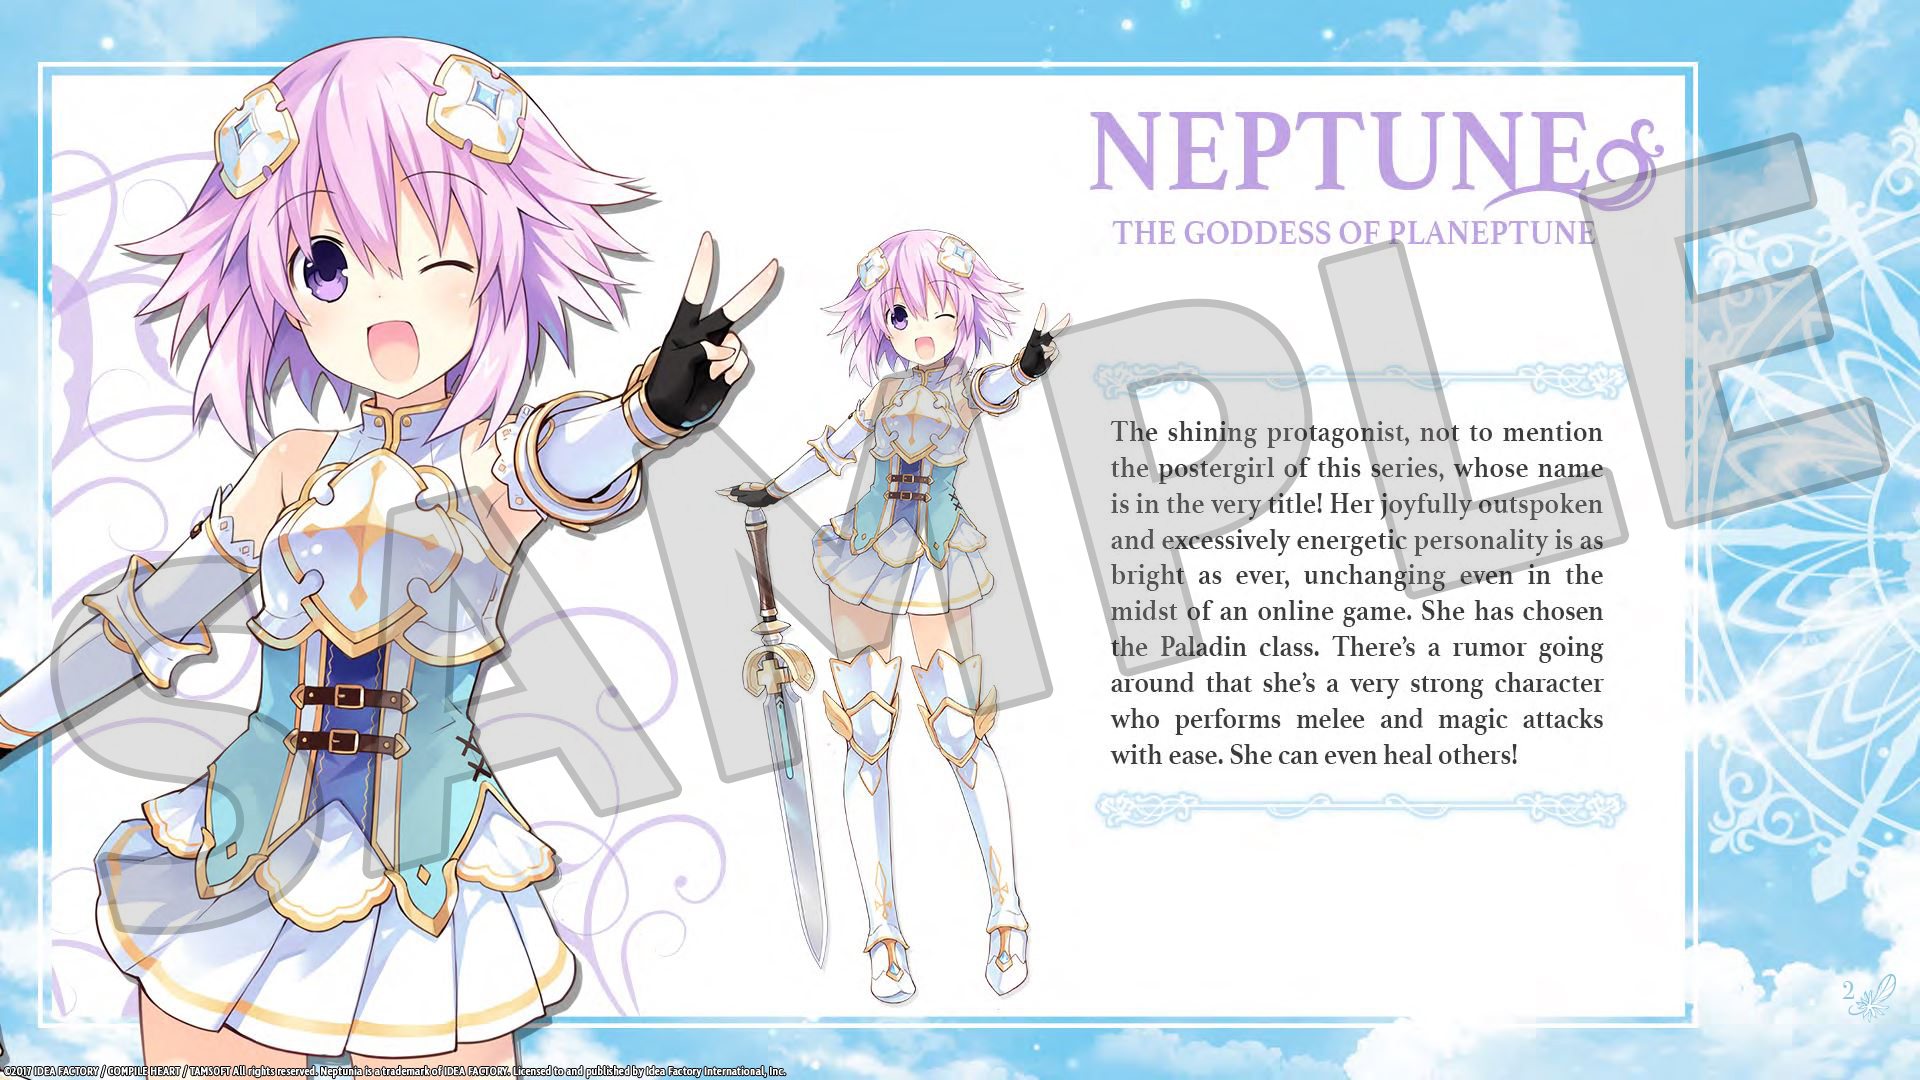 Cyberdimension Neptunia: 4 Goddesses Online - Deluxe Pack DLC Steam CD Key, 1.69$